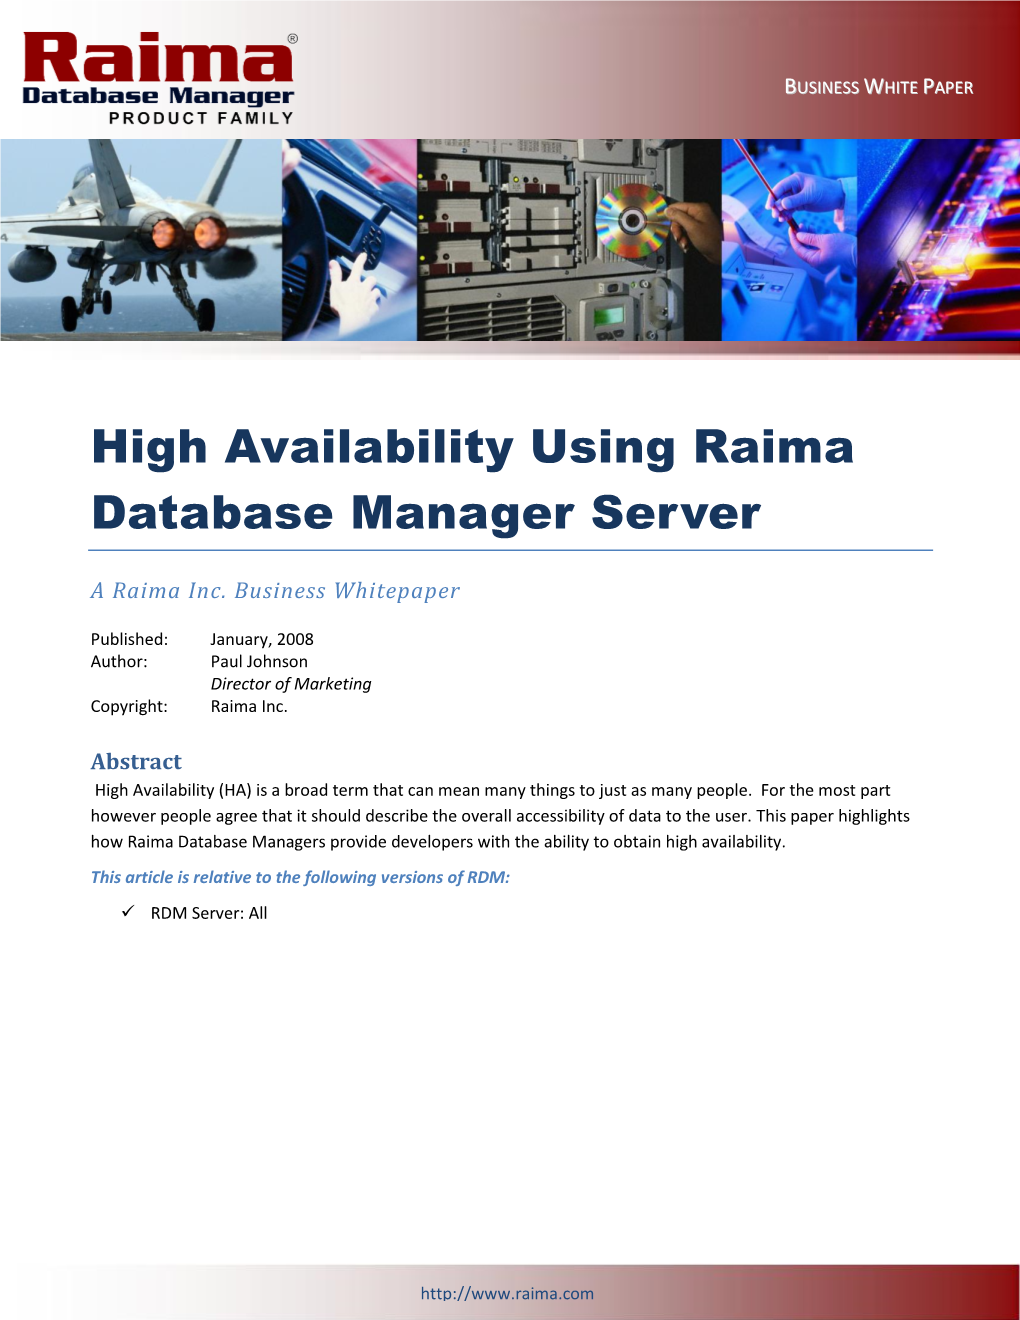 High Availability Using Raima Database Manager Server